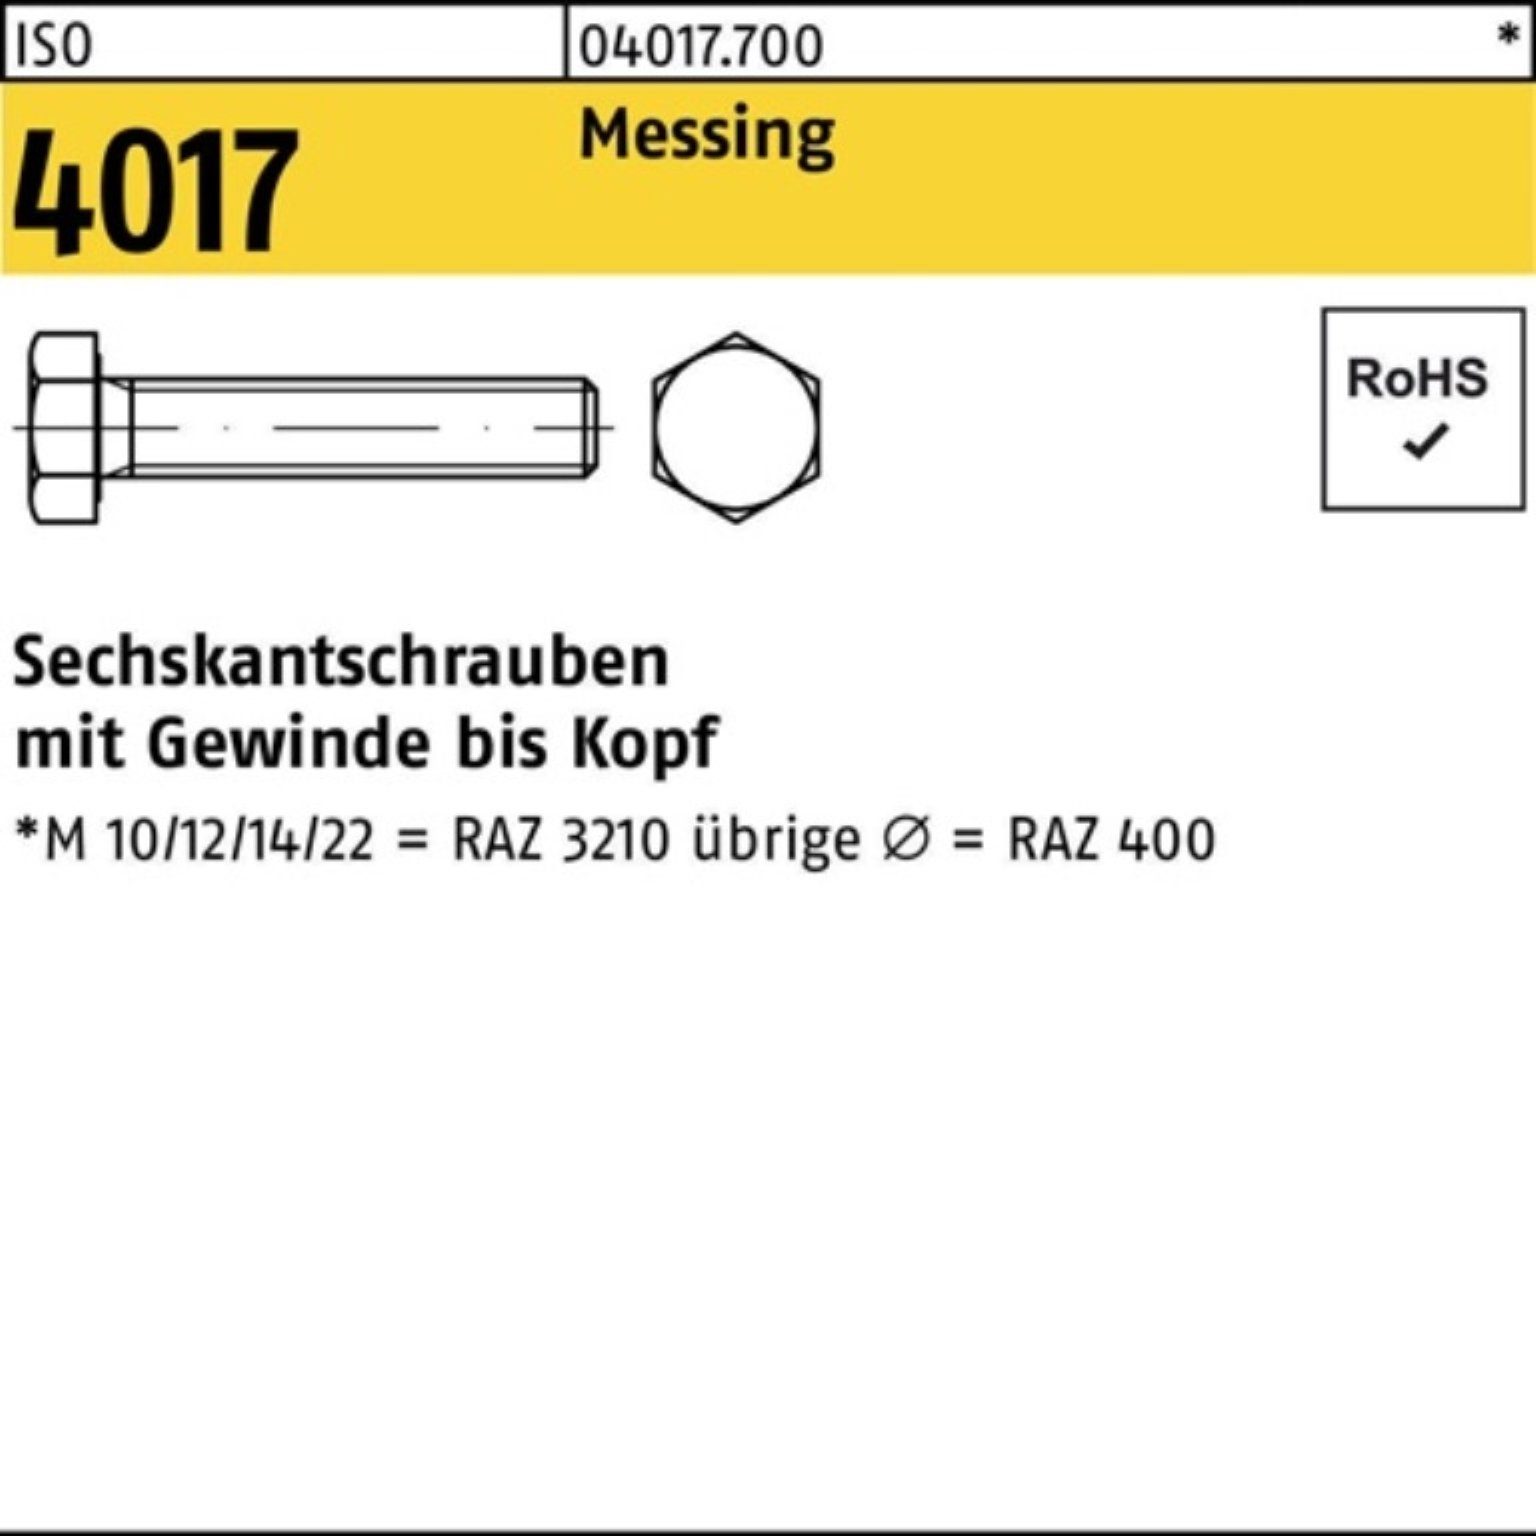 Bufab Sechskantschraube 100er 100 ISO Messing 60 ISO Pack Stück Sechskantschraube VG 4017 M6x